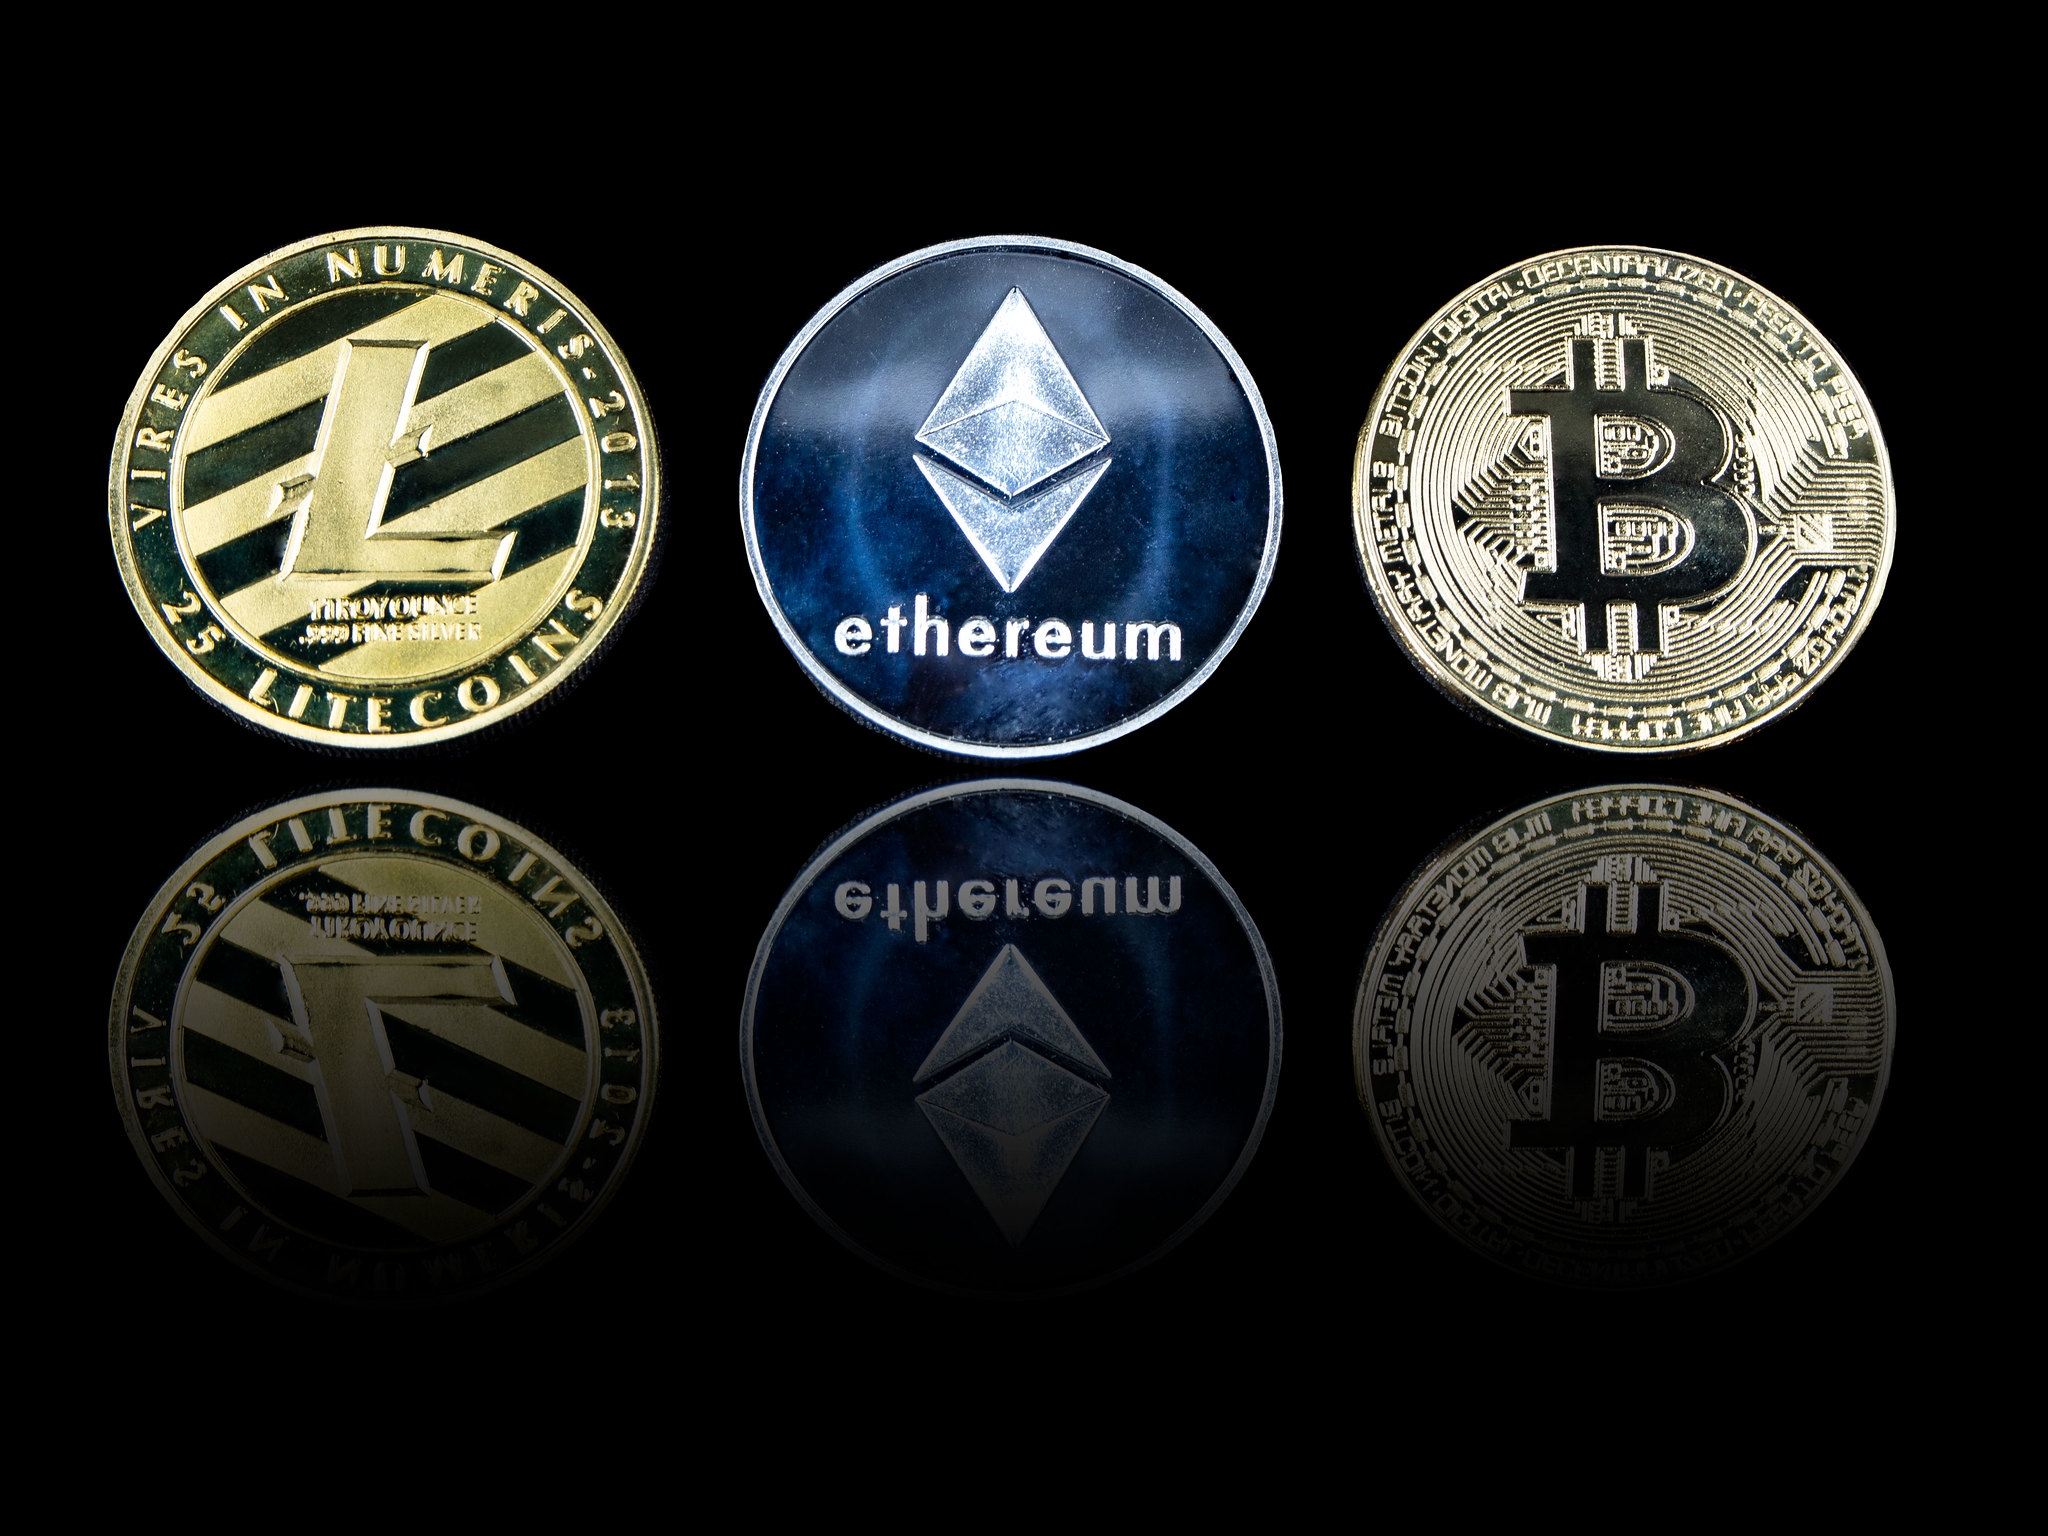 bitcoin ethereum crypto logos